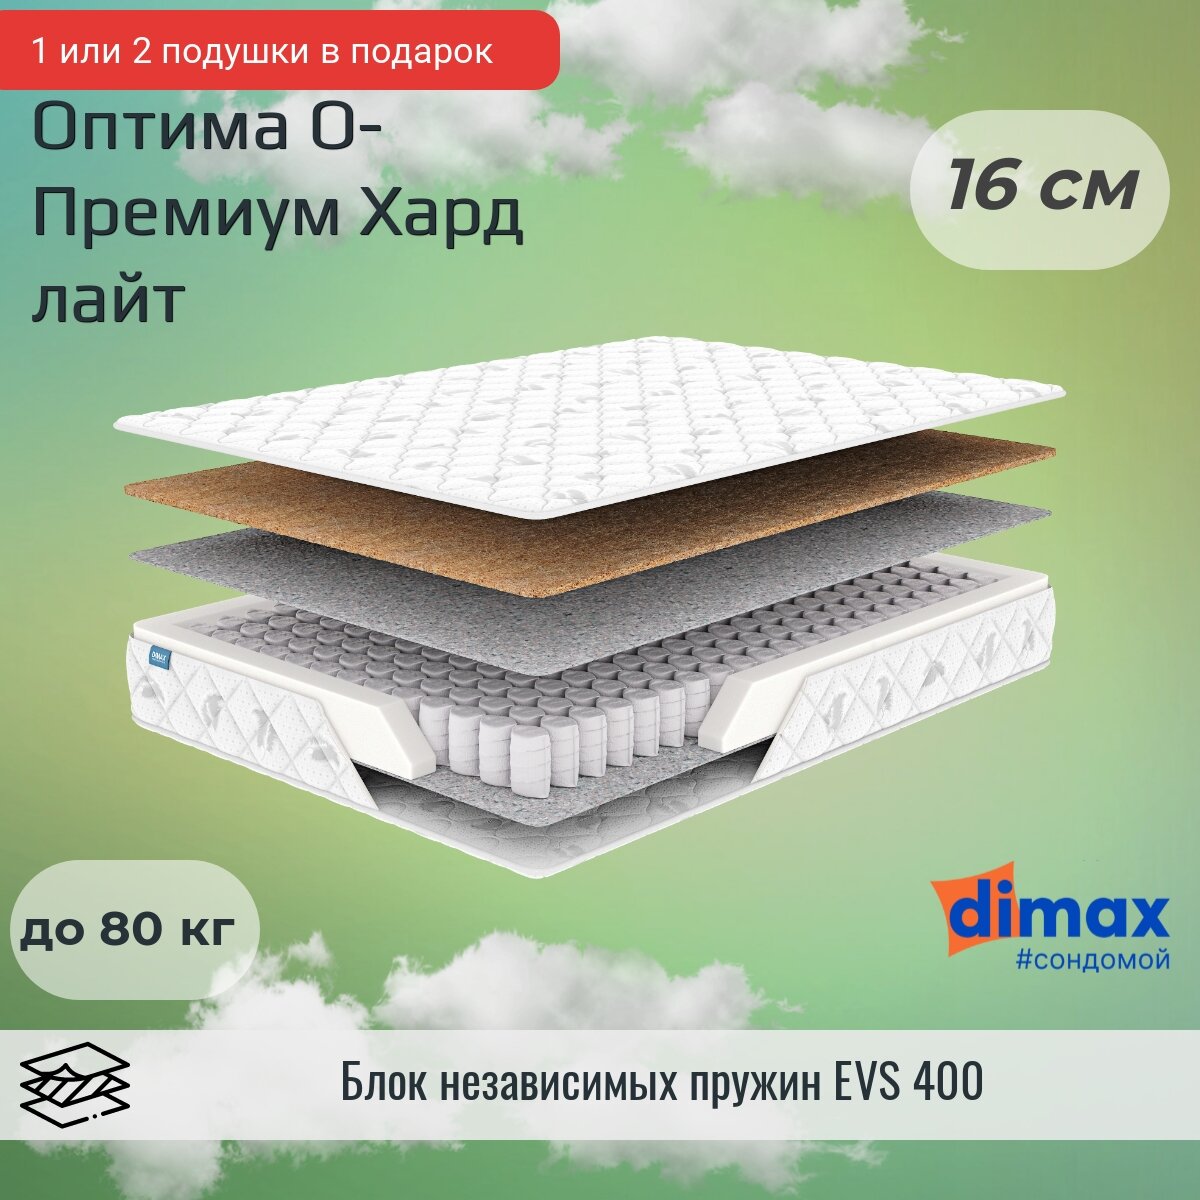 Матрас Dimax Оптима О-Премиум хард лайт 70х200